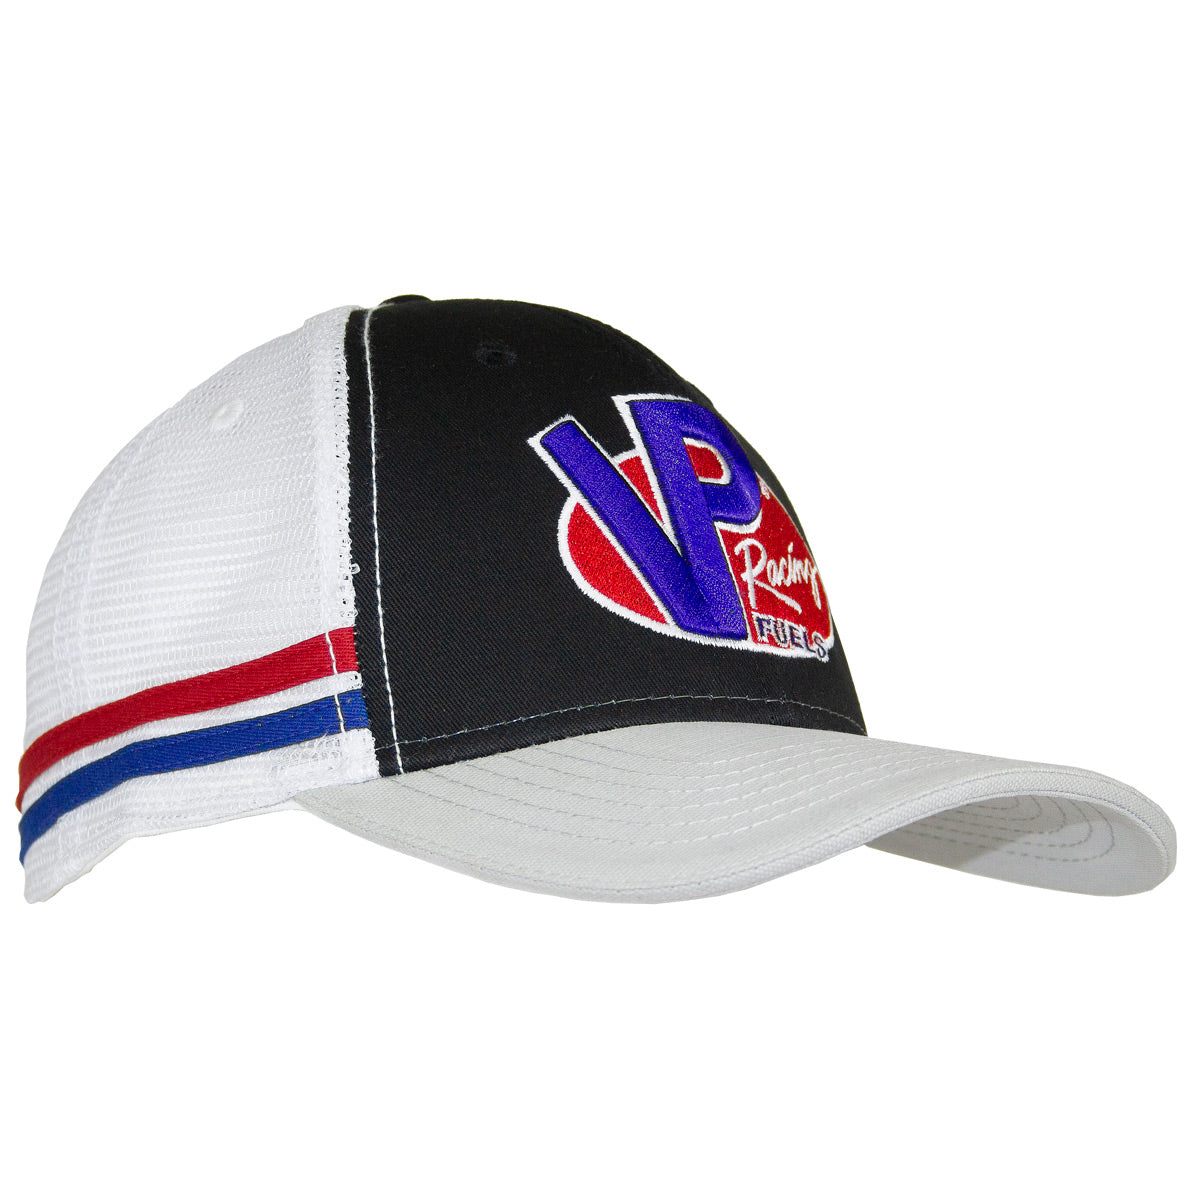 VP Racing Stripe Hat - Black / Grey